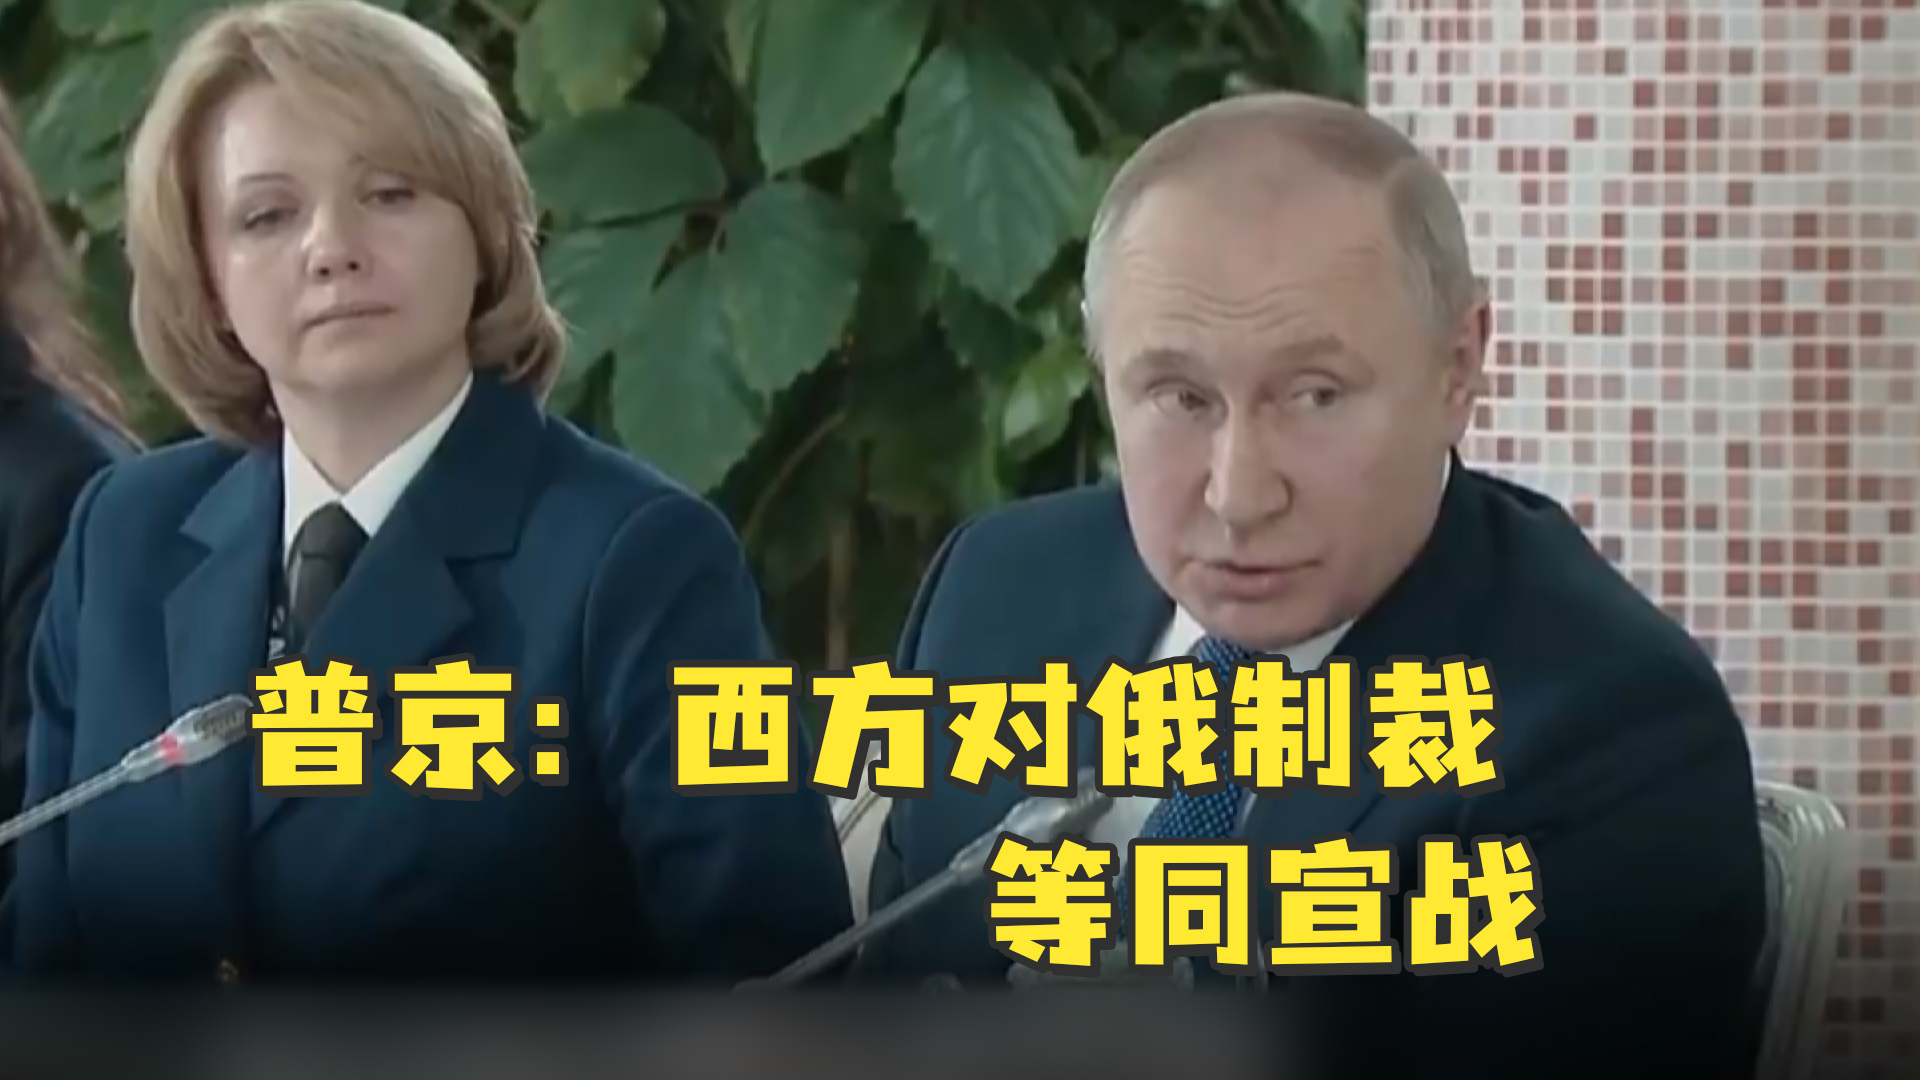 普京承认西方制裁对俄经济造成风险_凤凰网视频_凤凰网